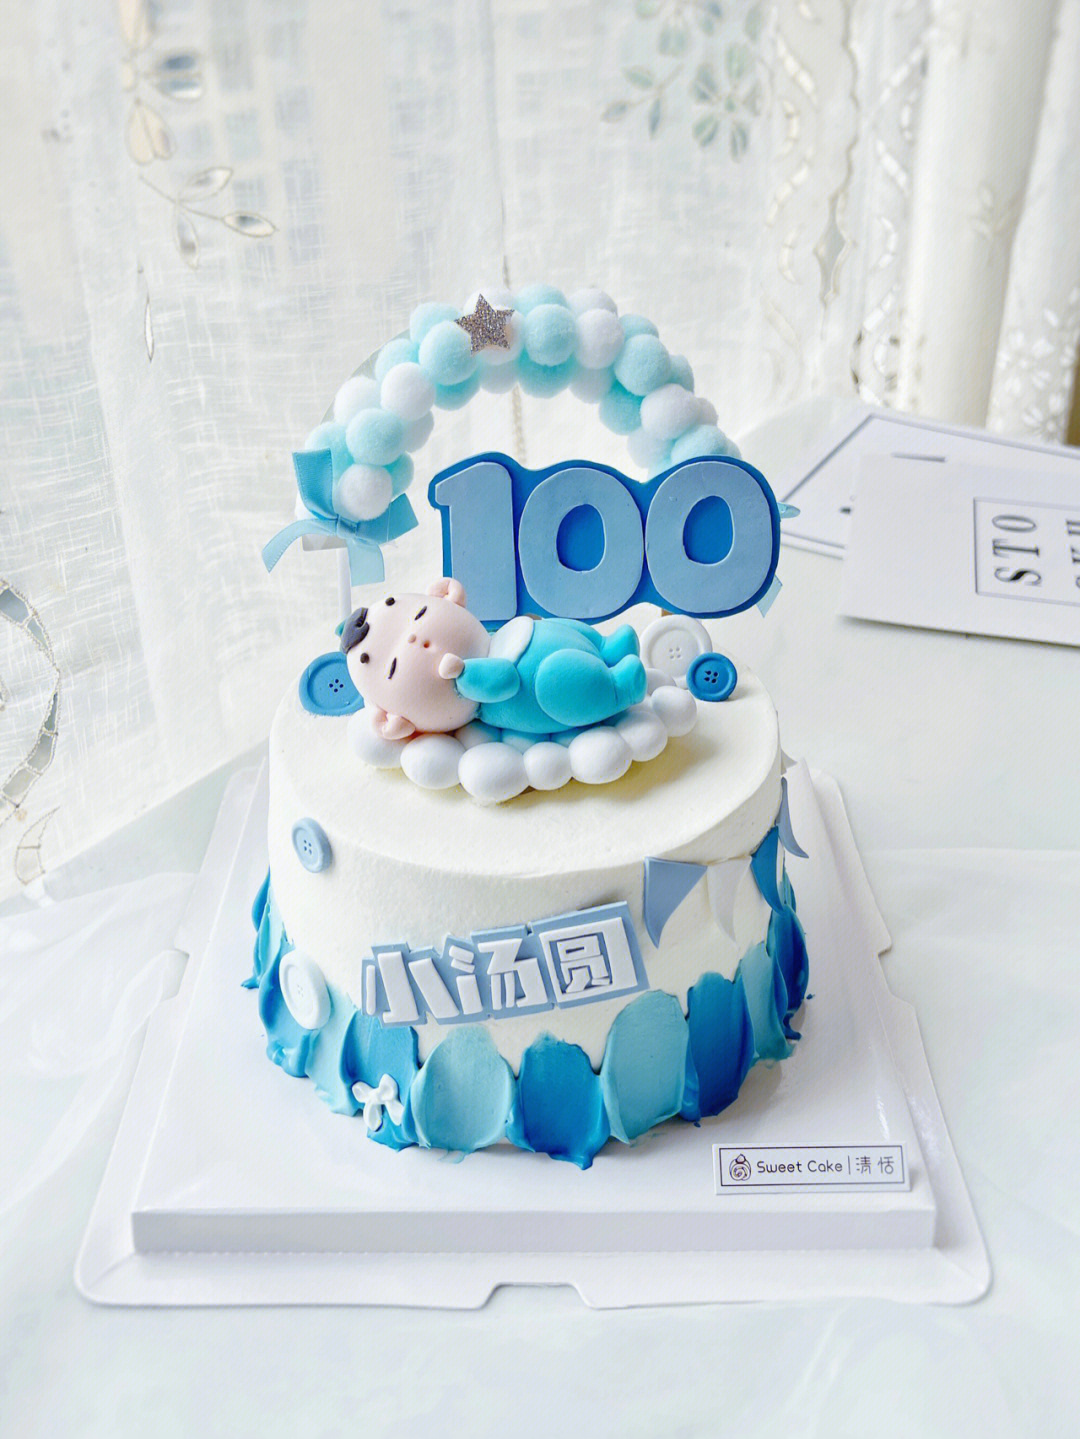 100天生日蛋糕图片欣赏图片